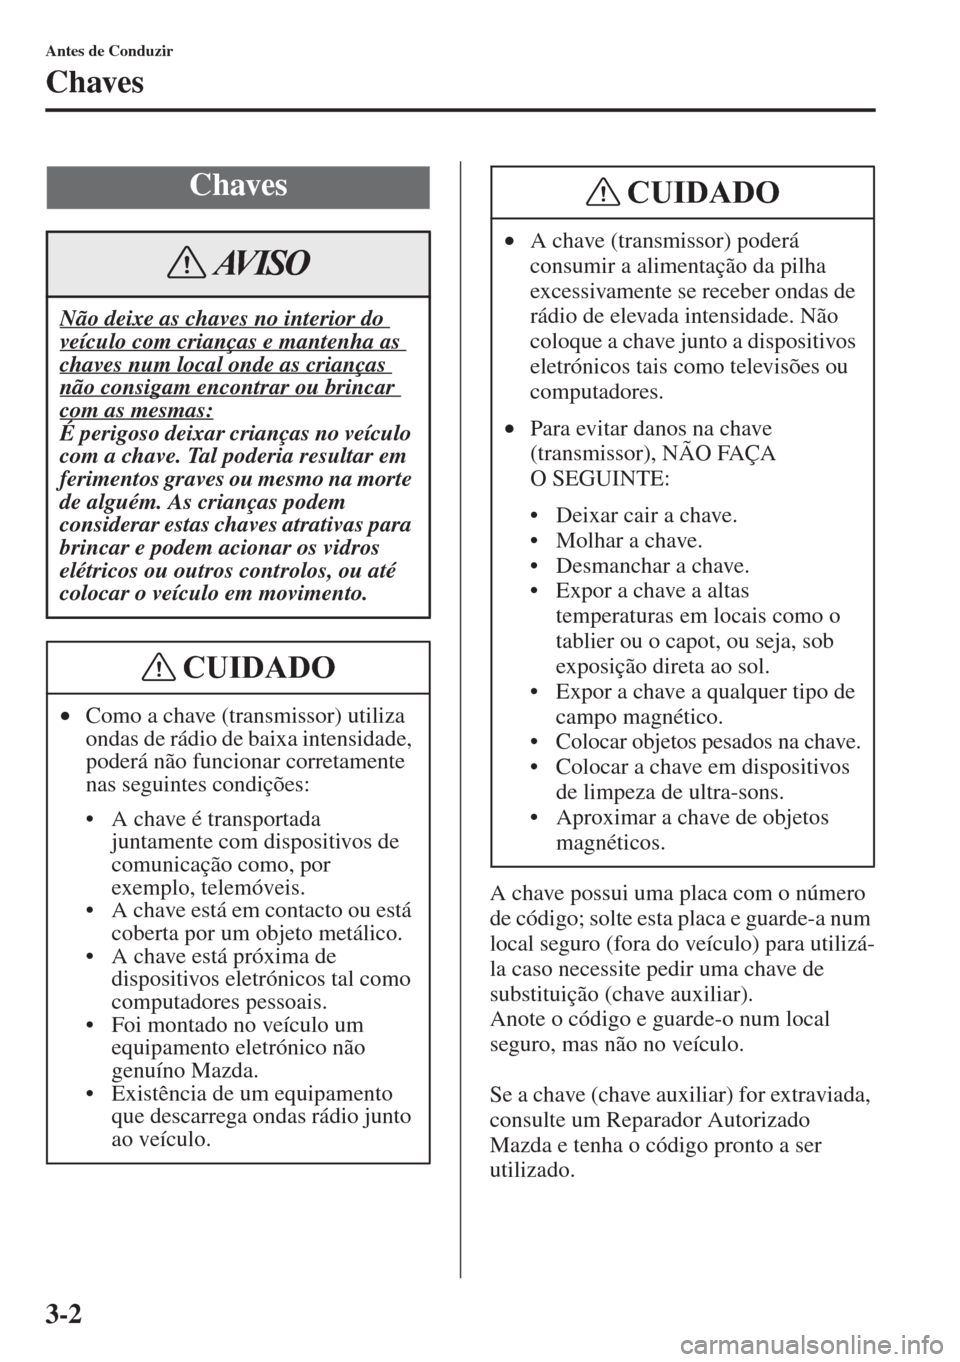 MAZDA MODEL CX-5 2015  Manual do proprietário (in Portuguese) 3-2
Antes de Conduzir
Chaves
A chave possui uma placa com o número 
de código; solte esta placa e guarde-a num 
local seguro (fora do veículo) para utilizá-
la caso necessite pedir uma chave de 
s